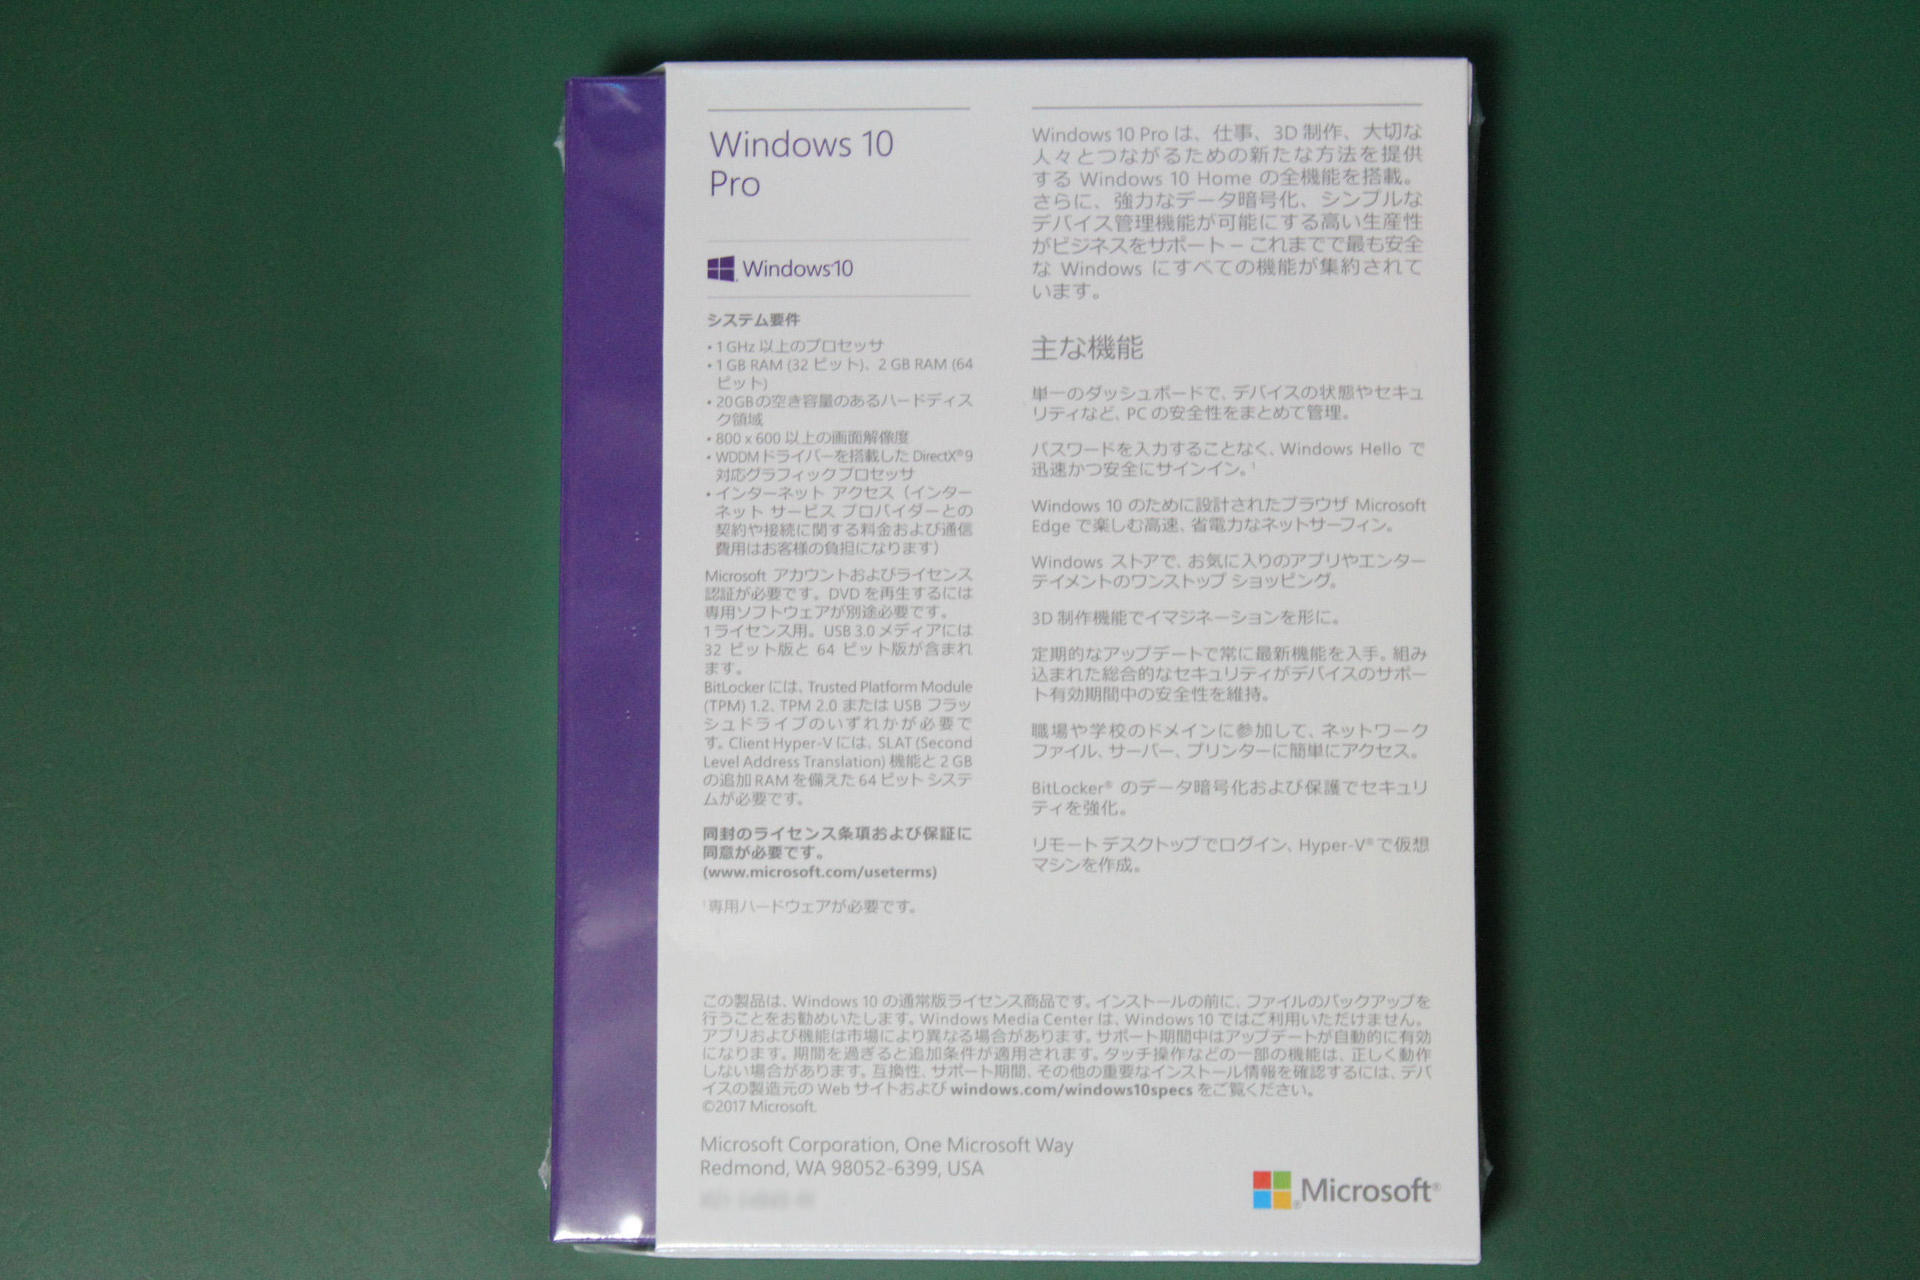 Windows10 pro パッケージ版 プロダクトキー付き - Windowsデスクトップ